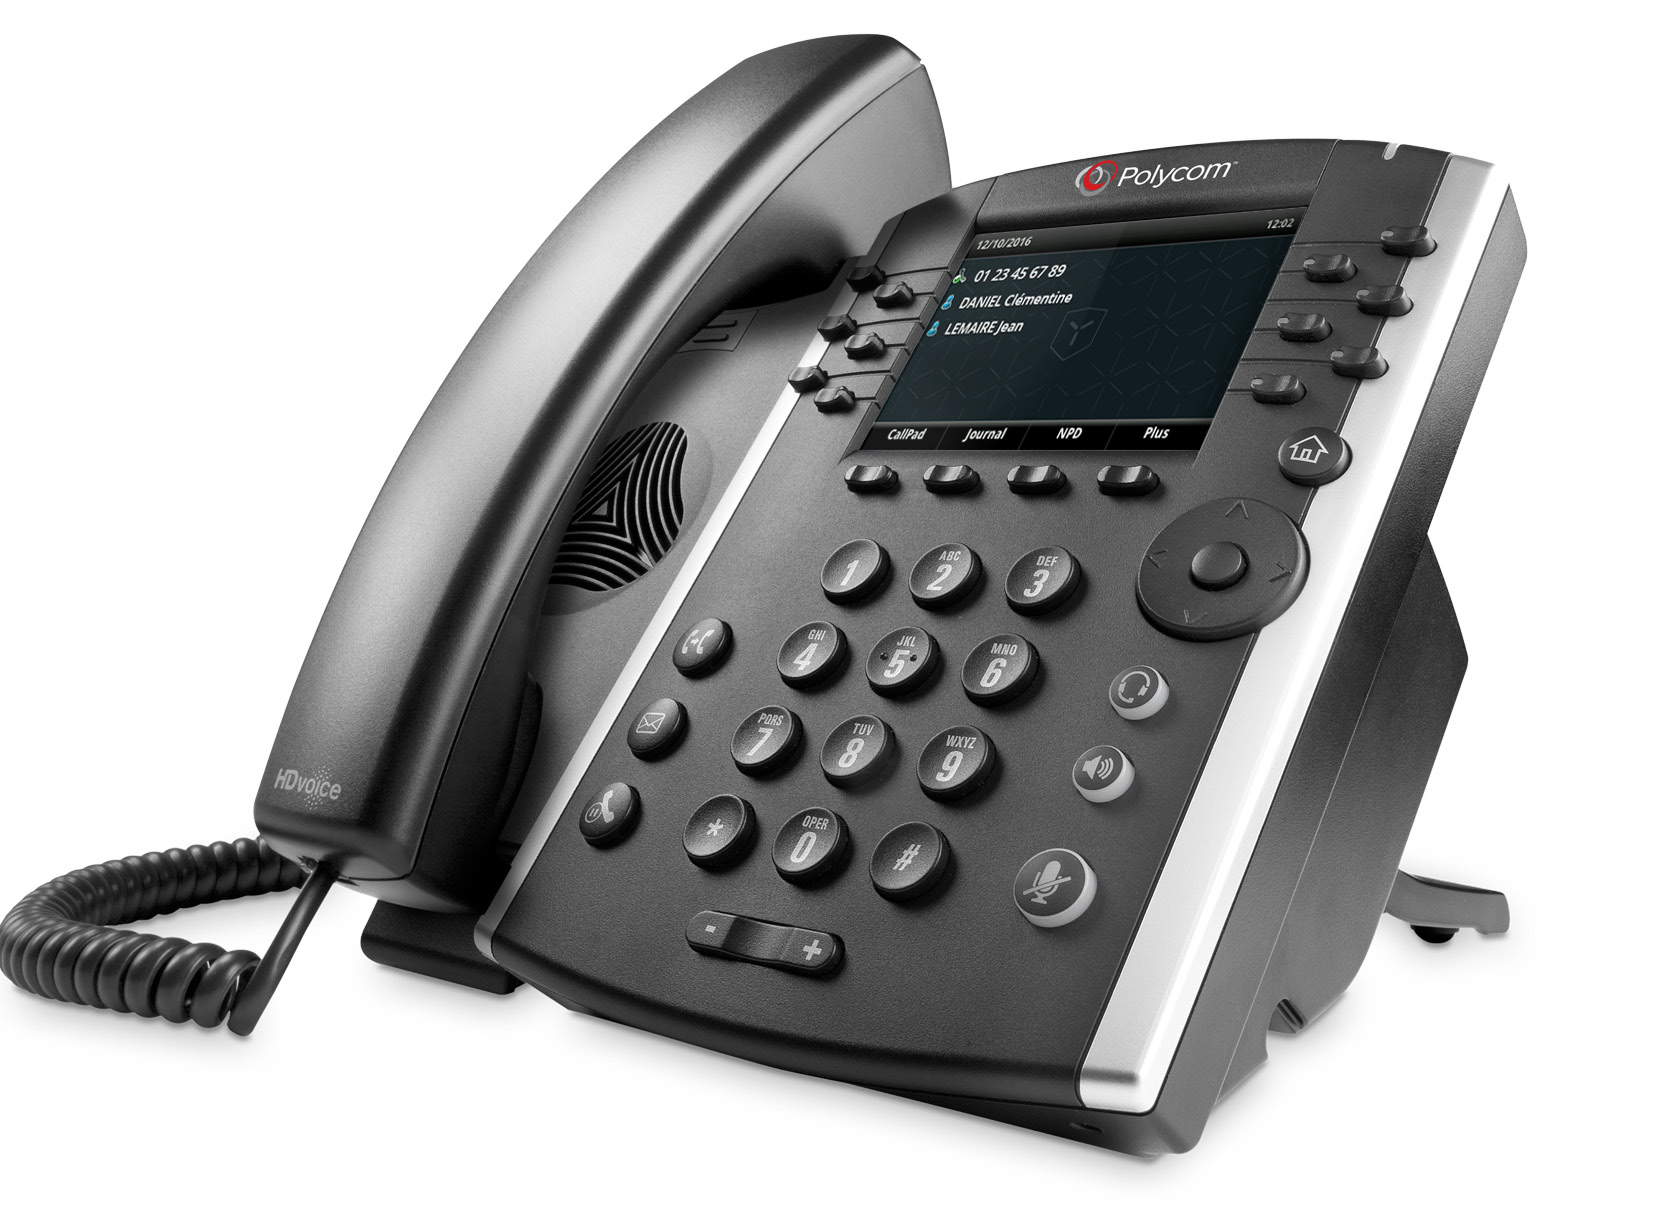 Guide d installation Téléphone IP Polycom VVX 401 / 411 9 10 1 2 3 4 5 6 11 12 13 14 15 16 7 8 1. Écran 2. Touches logicielles 3. Clavier de numérotation 4. Touche transfert d appel 5.